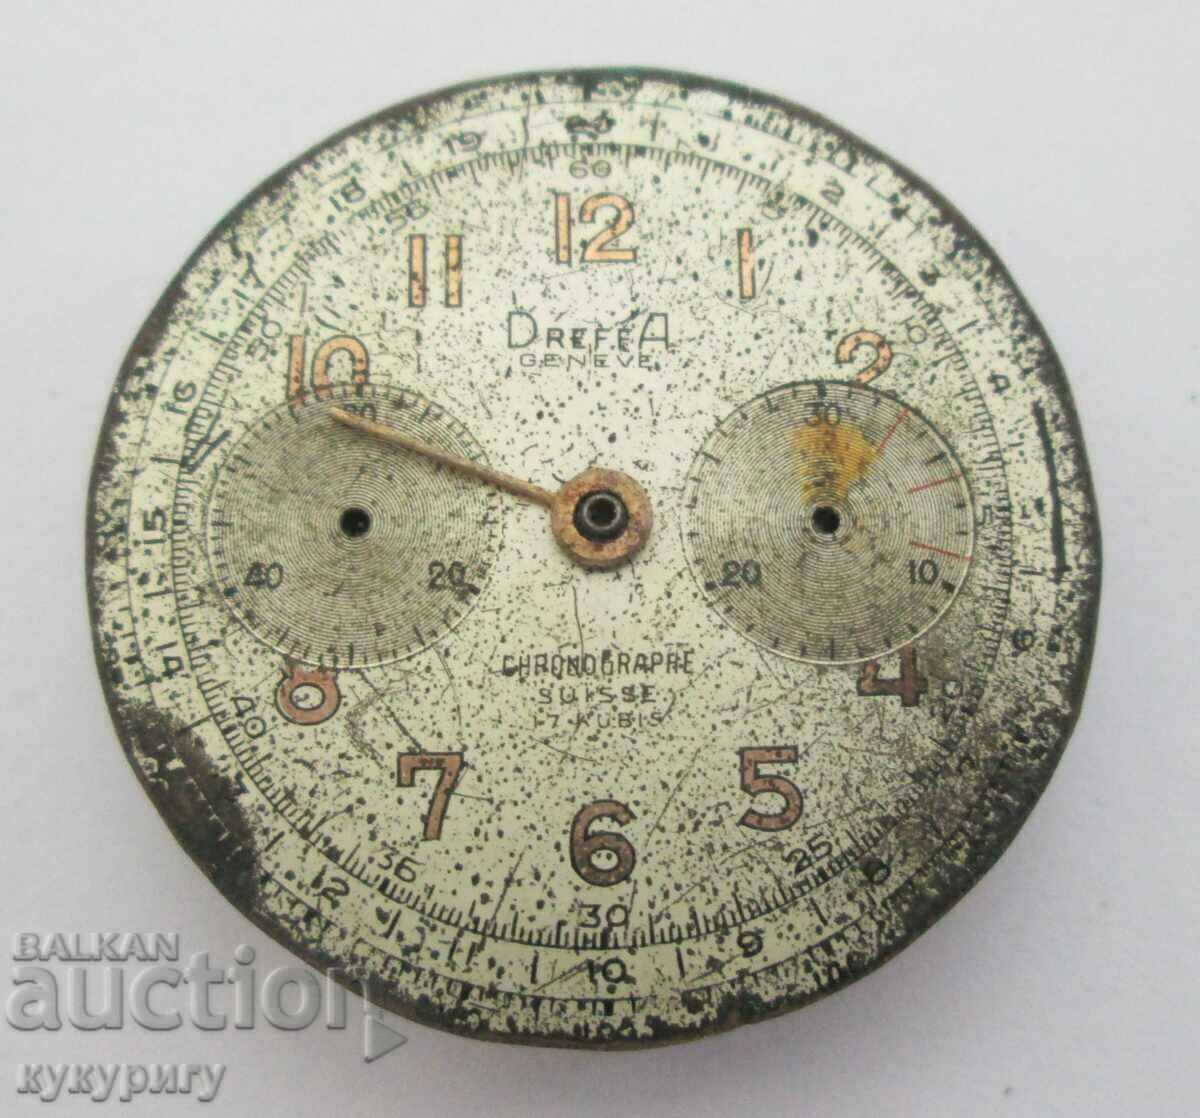 Стар Швейцарски механичен часовник хронограф за части